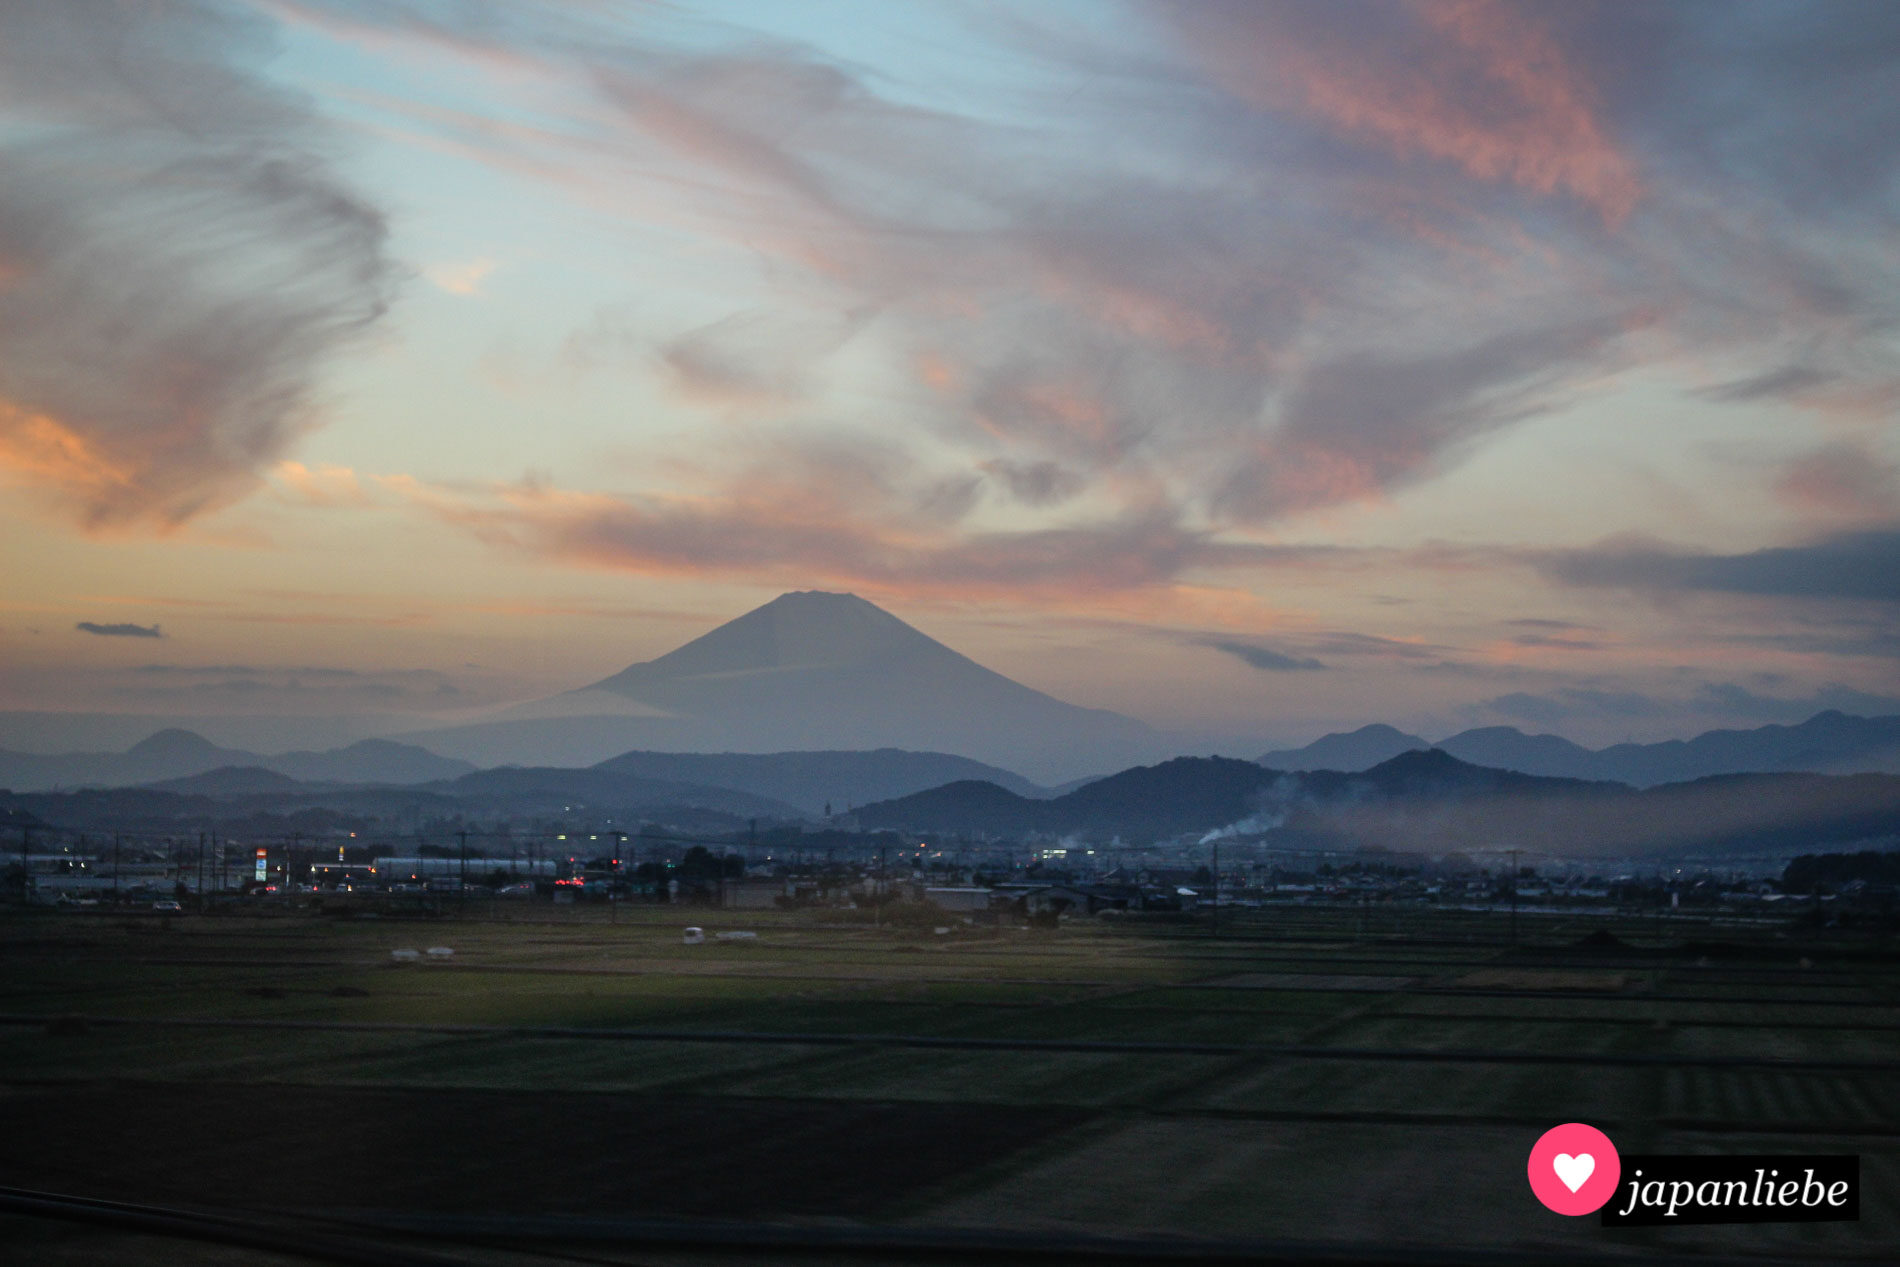 Der Fuji im Abendlicht vom Shinkansen-Schnellzug aus fotografiert.